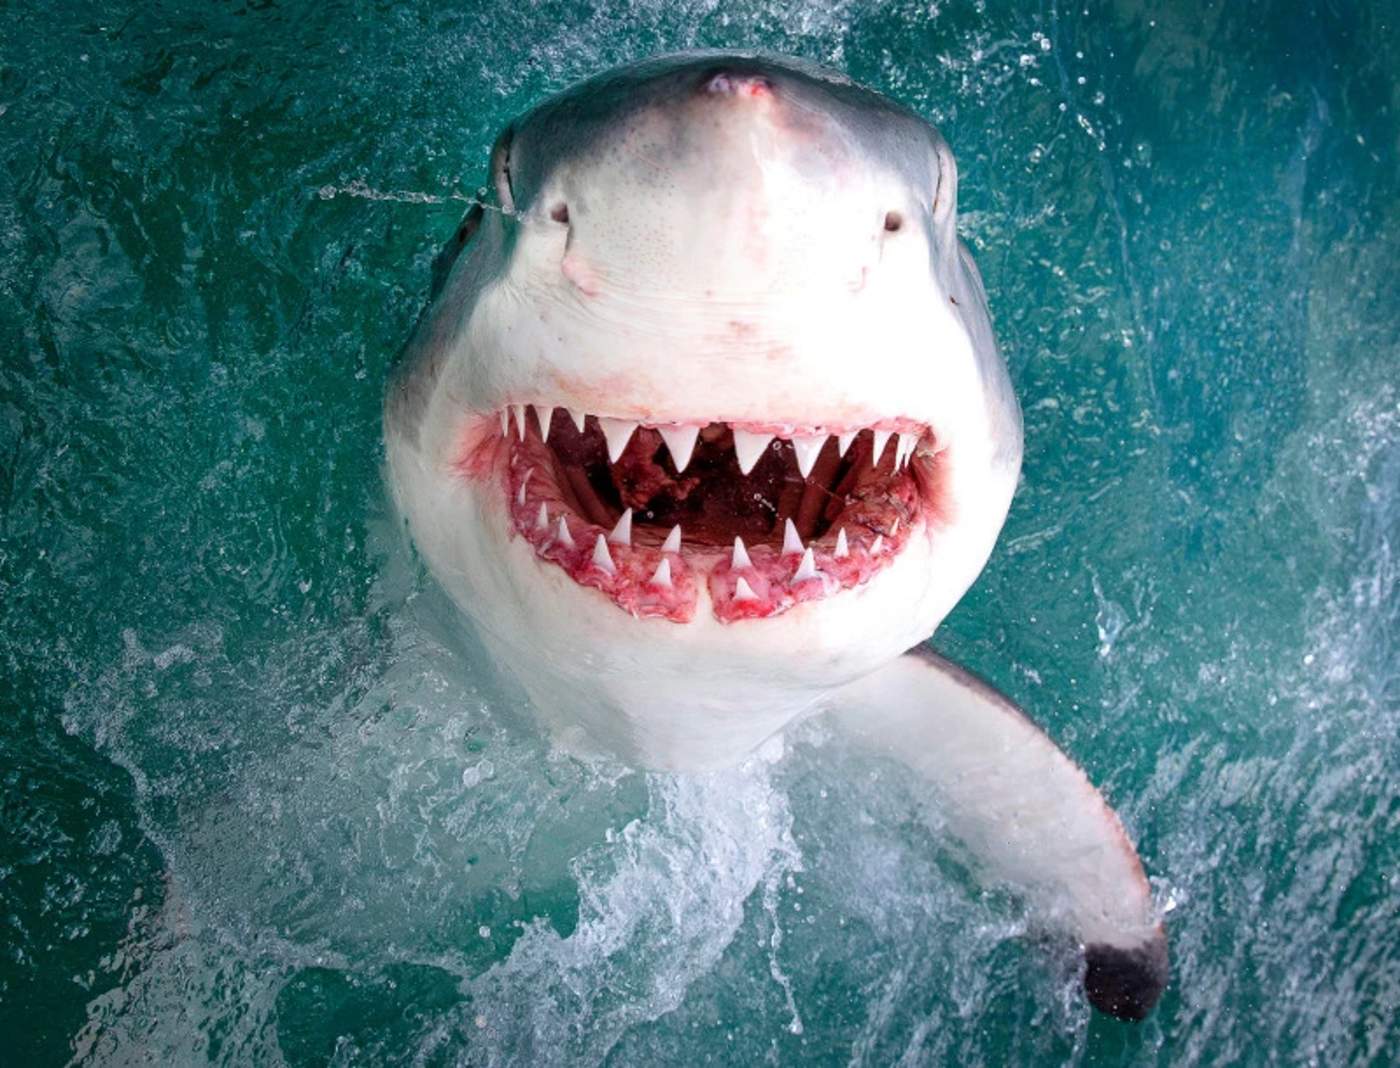 Sorprende imagen de tiburón que parece sonreír a la cámara